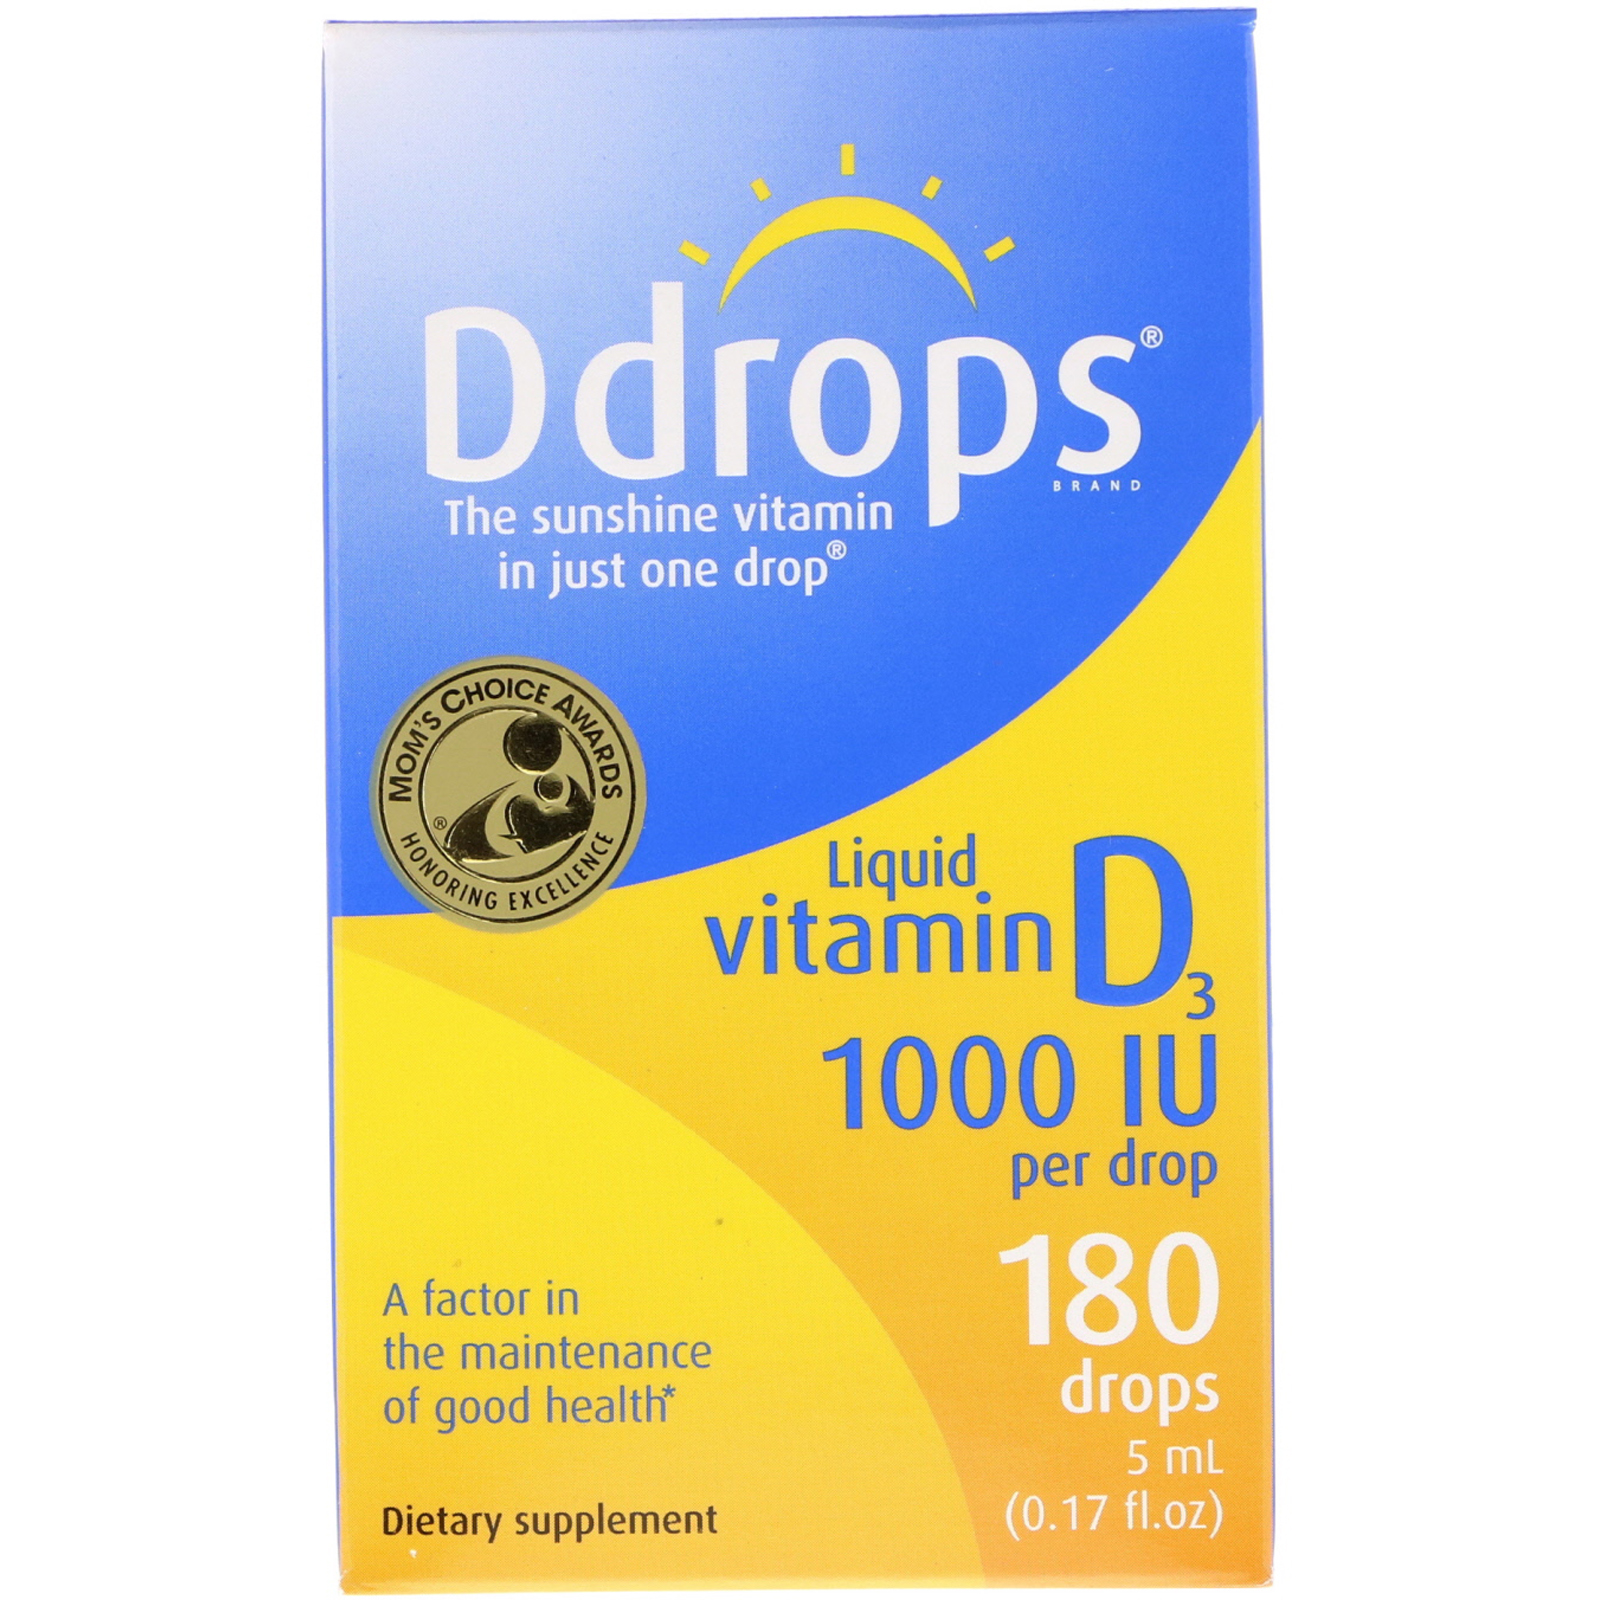 Baby Ddrops Liquid Vitamin D3 Drops, 400 IU Per Drop, 0.08 fl oz ...